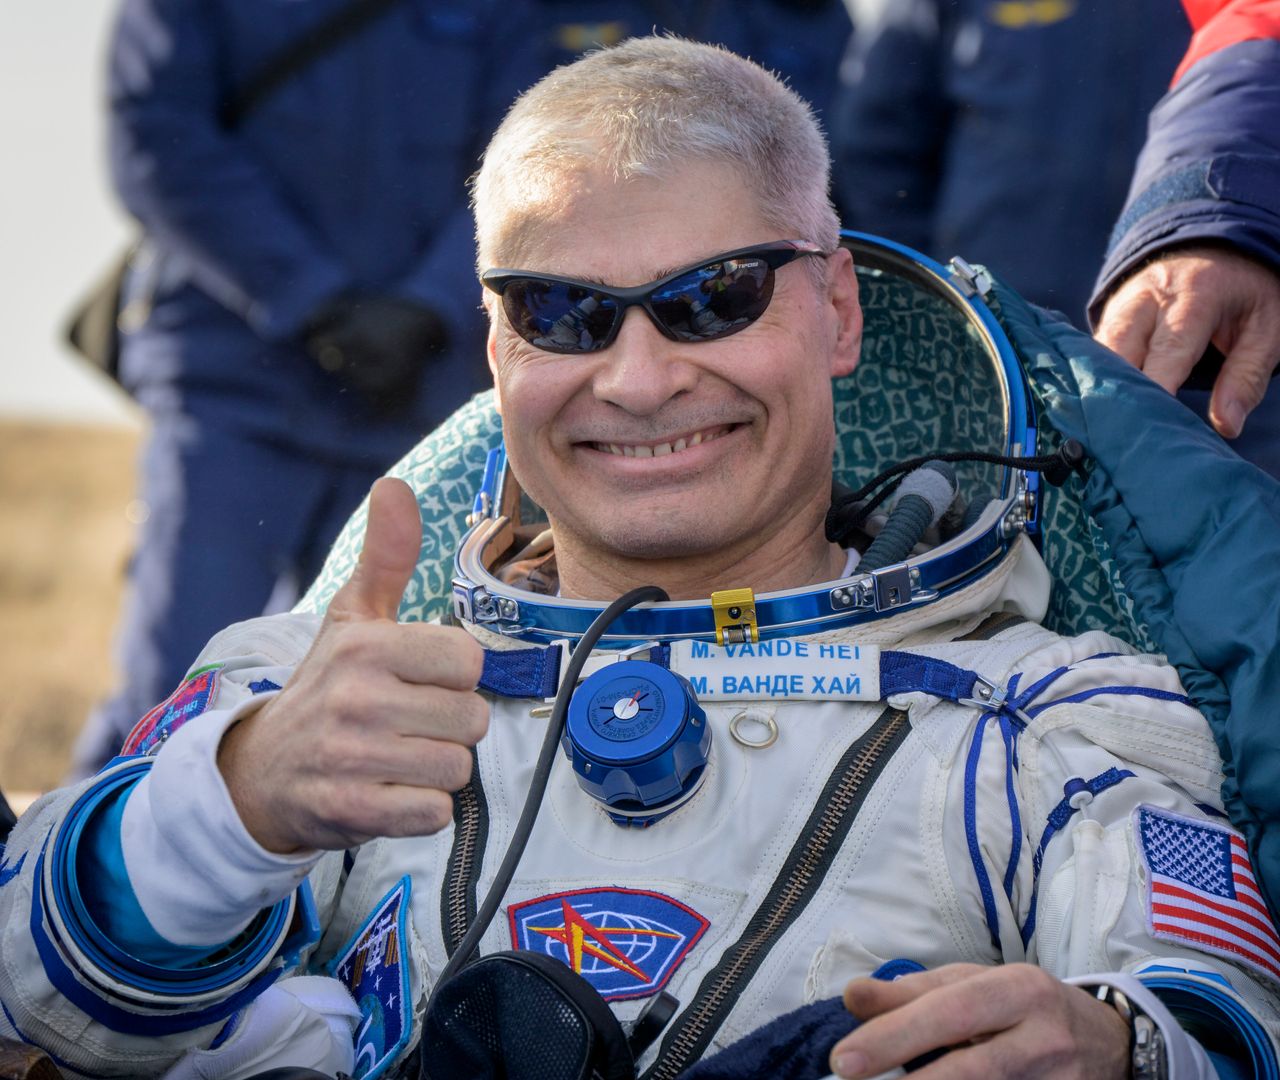 Μαρκ Βάντε Χάι μετά την προσγείωση της διαστημικής κάψουλας Soyuz στο Καζακστάν